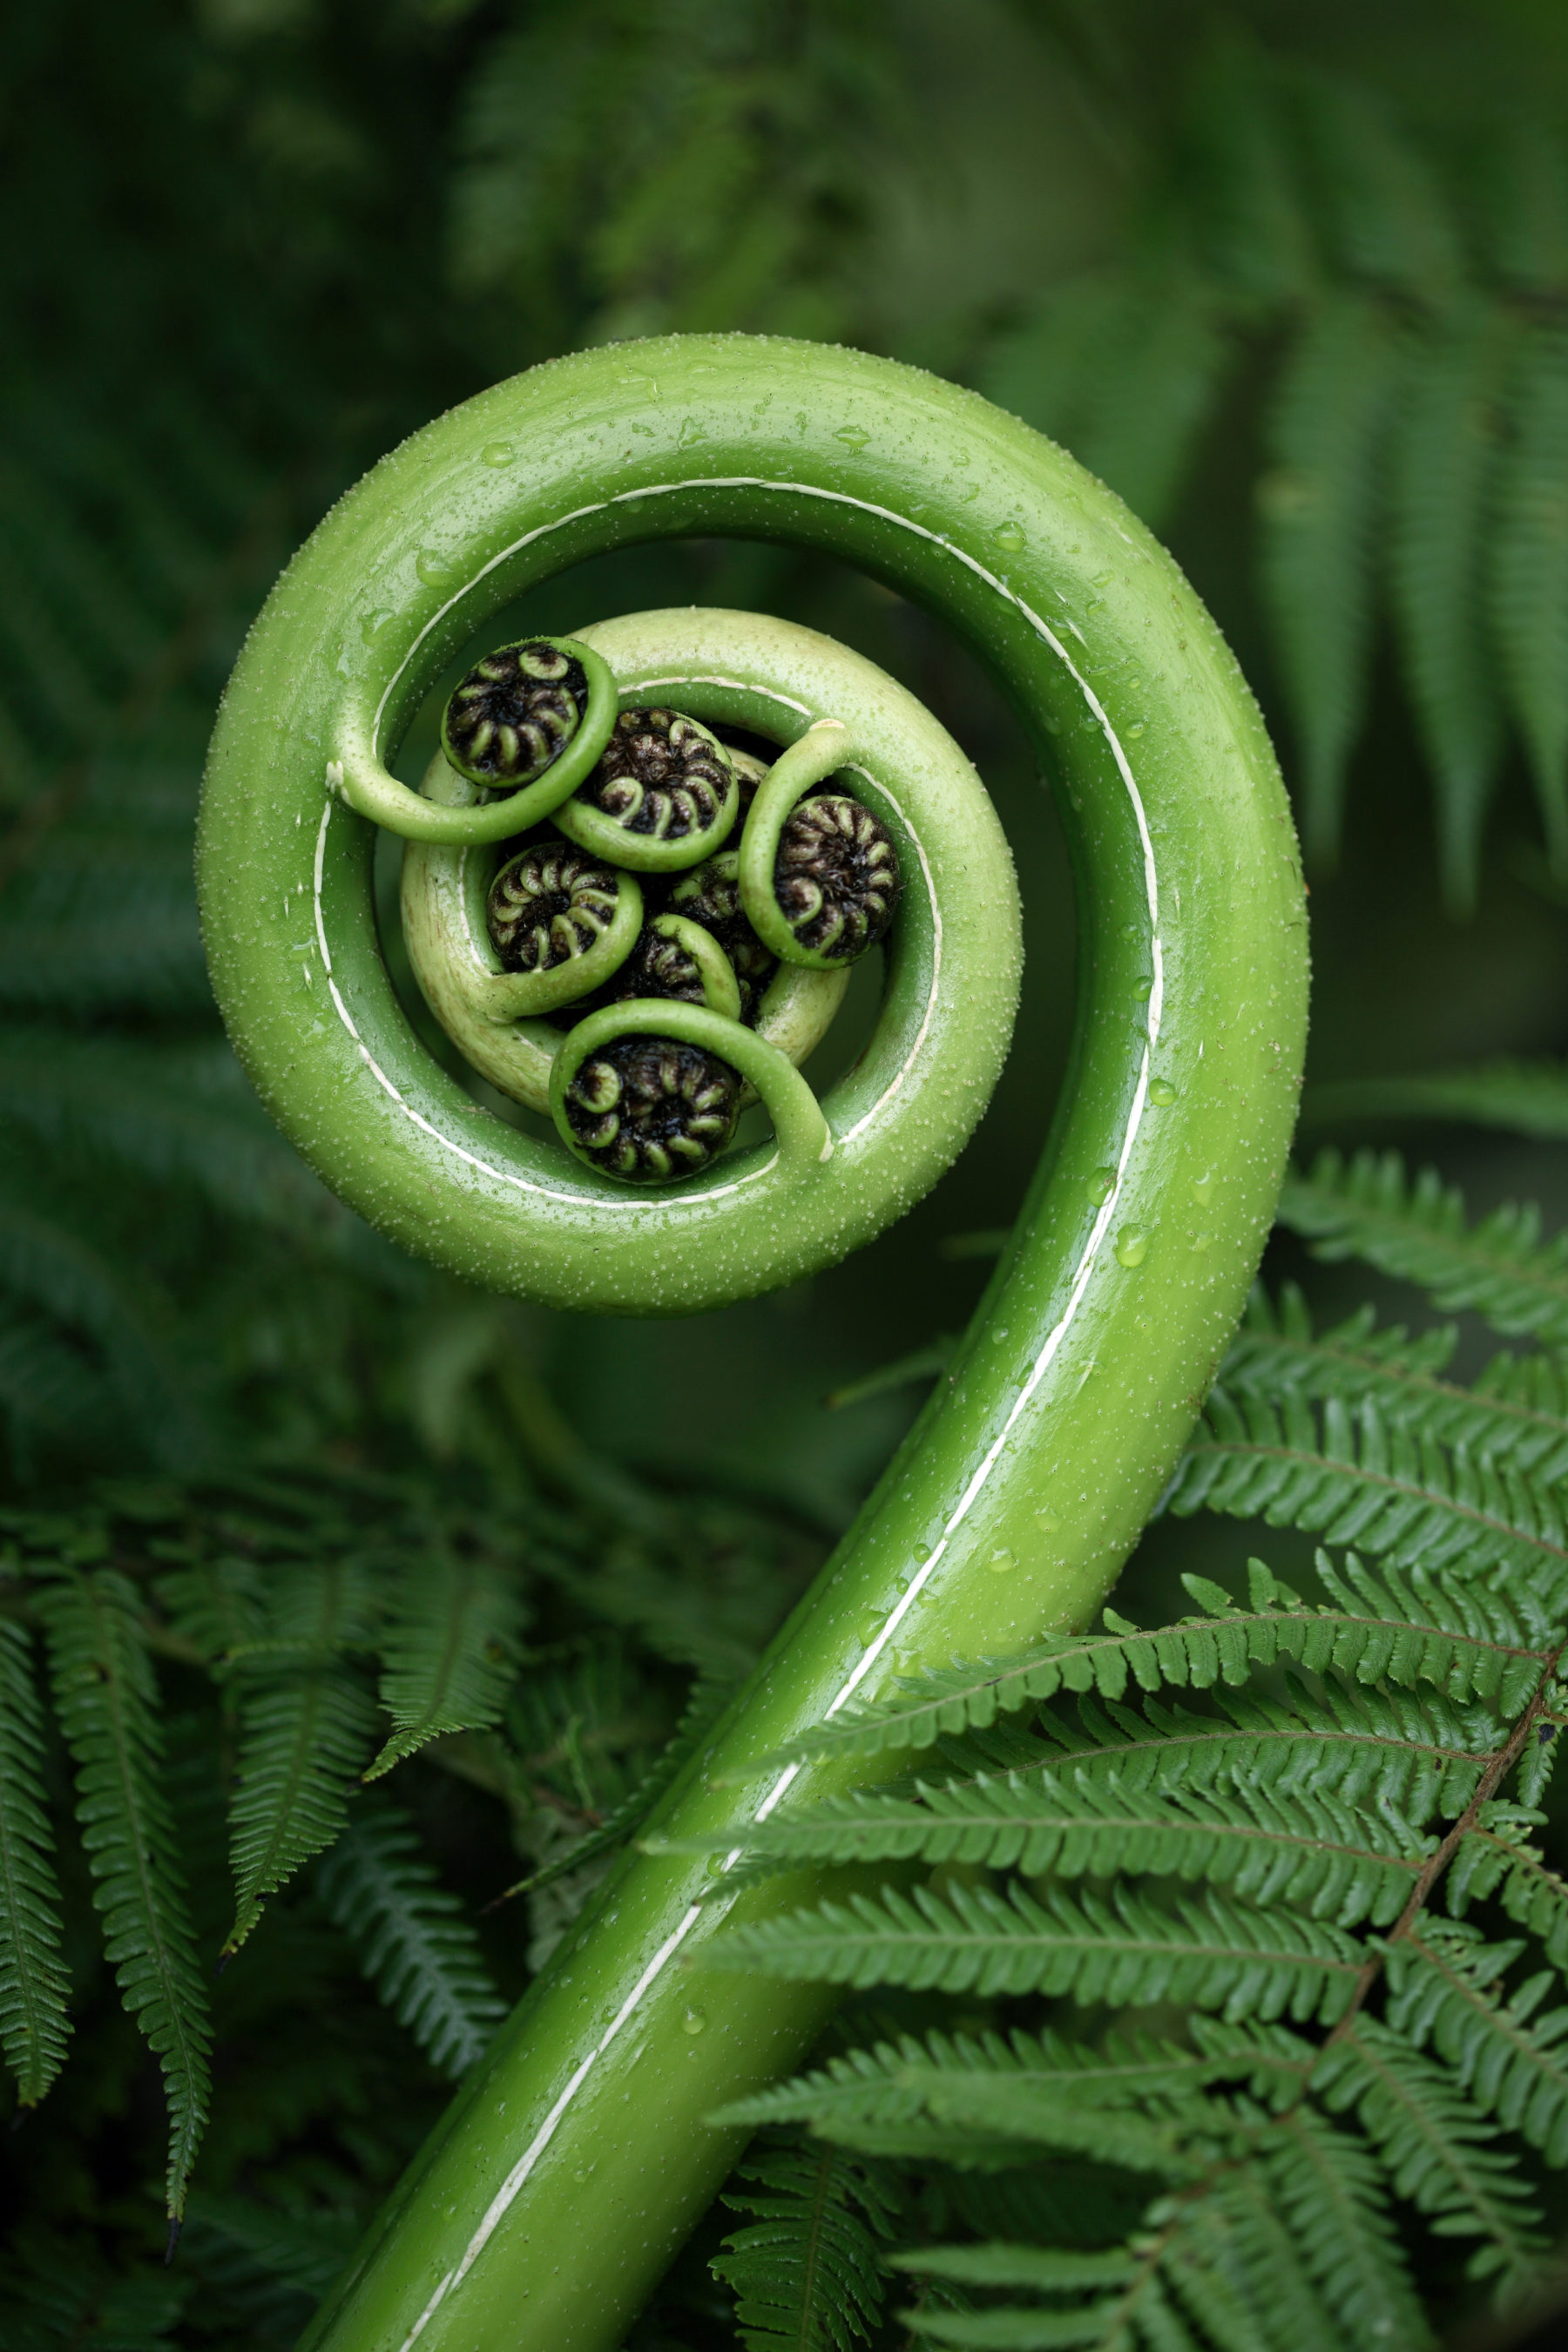 An image of a fern (koru) unfurling in New Zealand